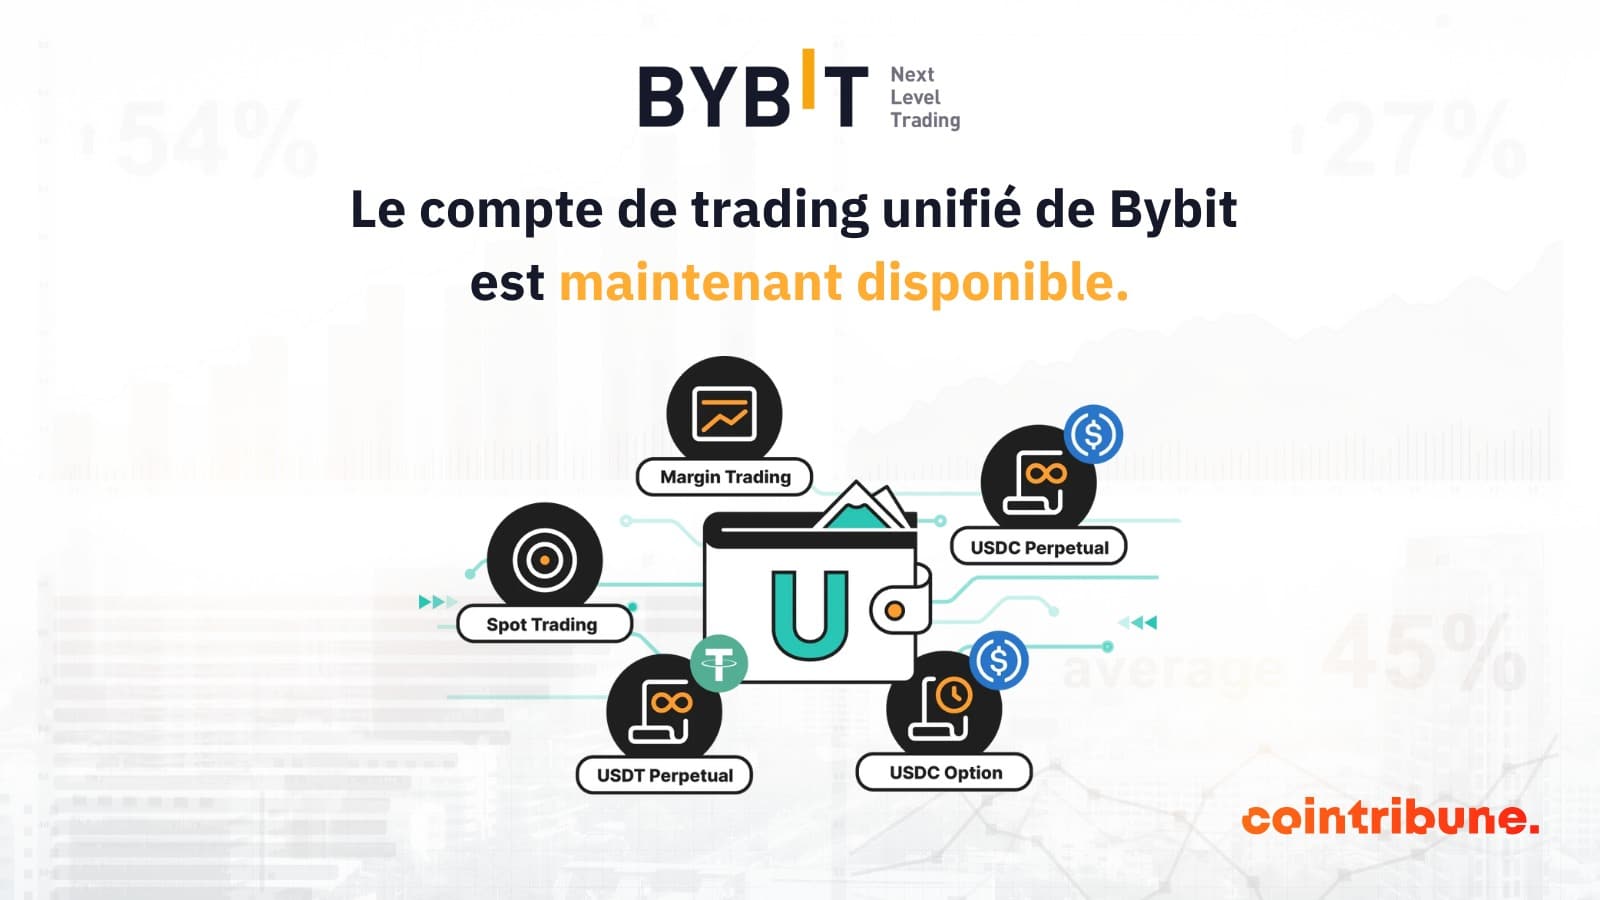 l'exchange centralisé bybit annonce le lancement de son compte de trading unifié